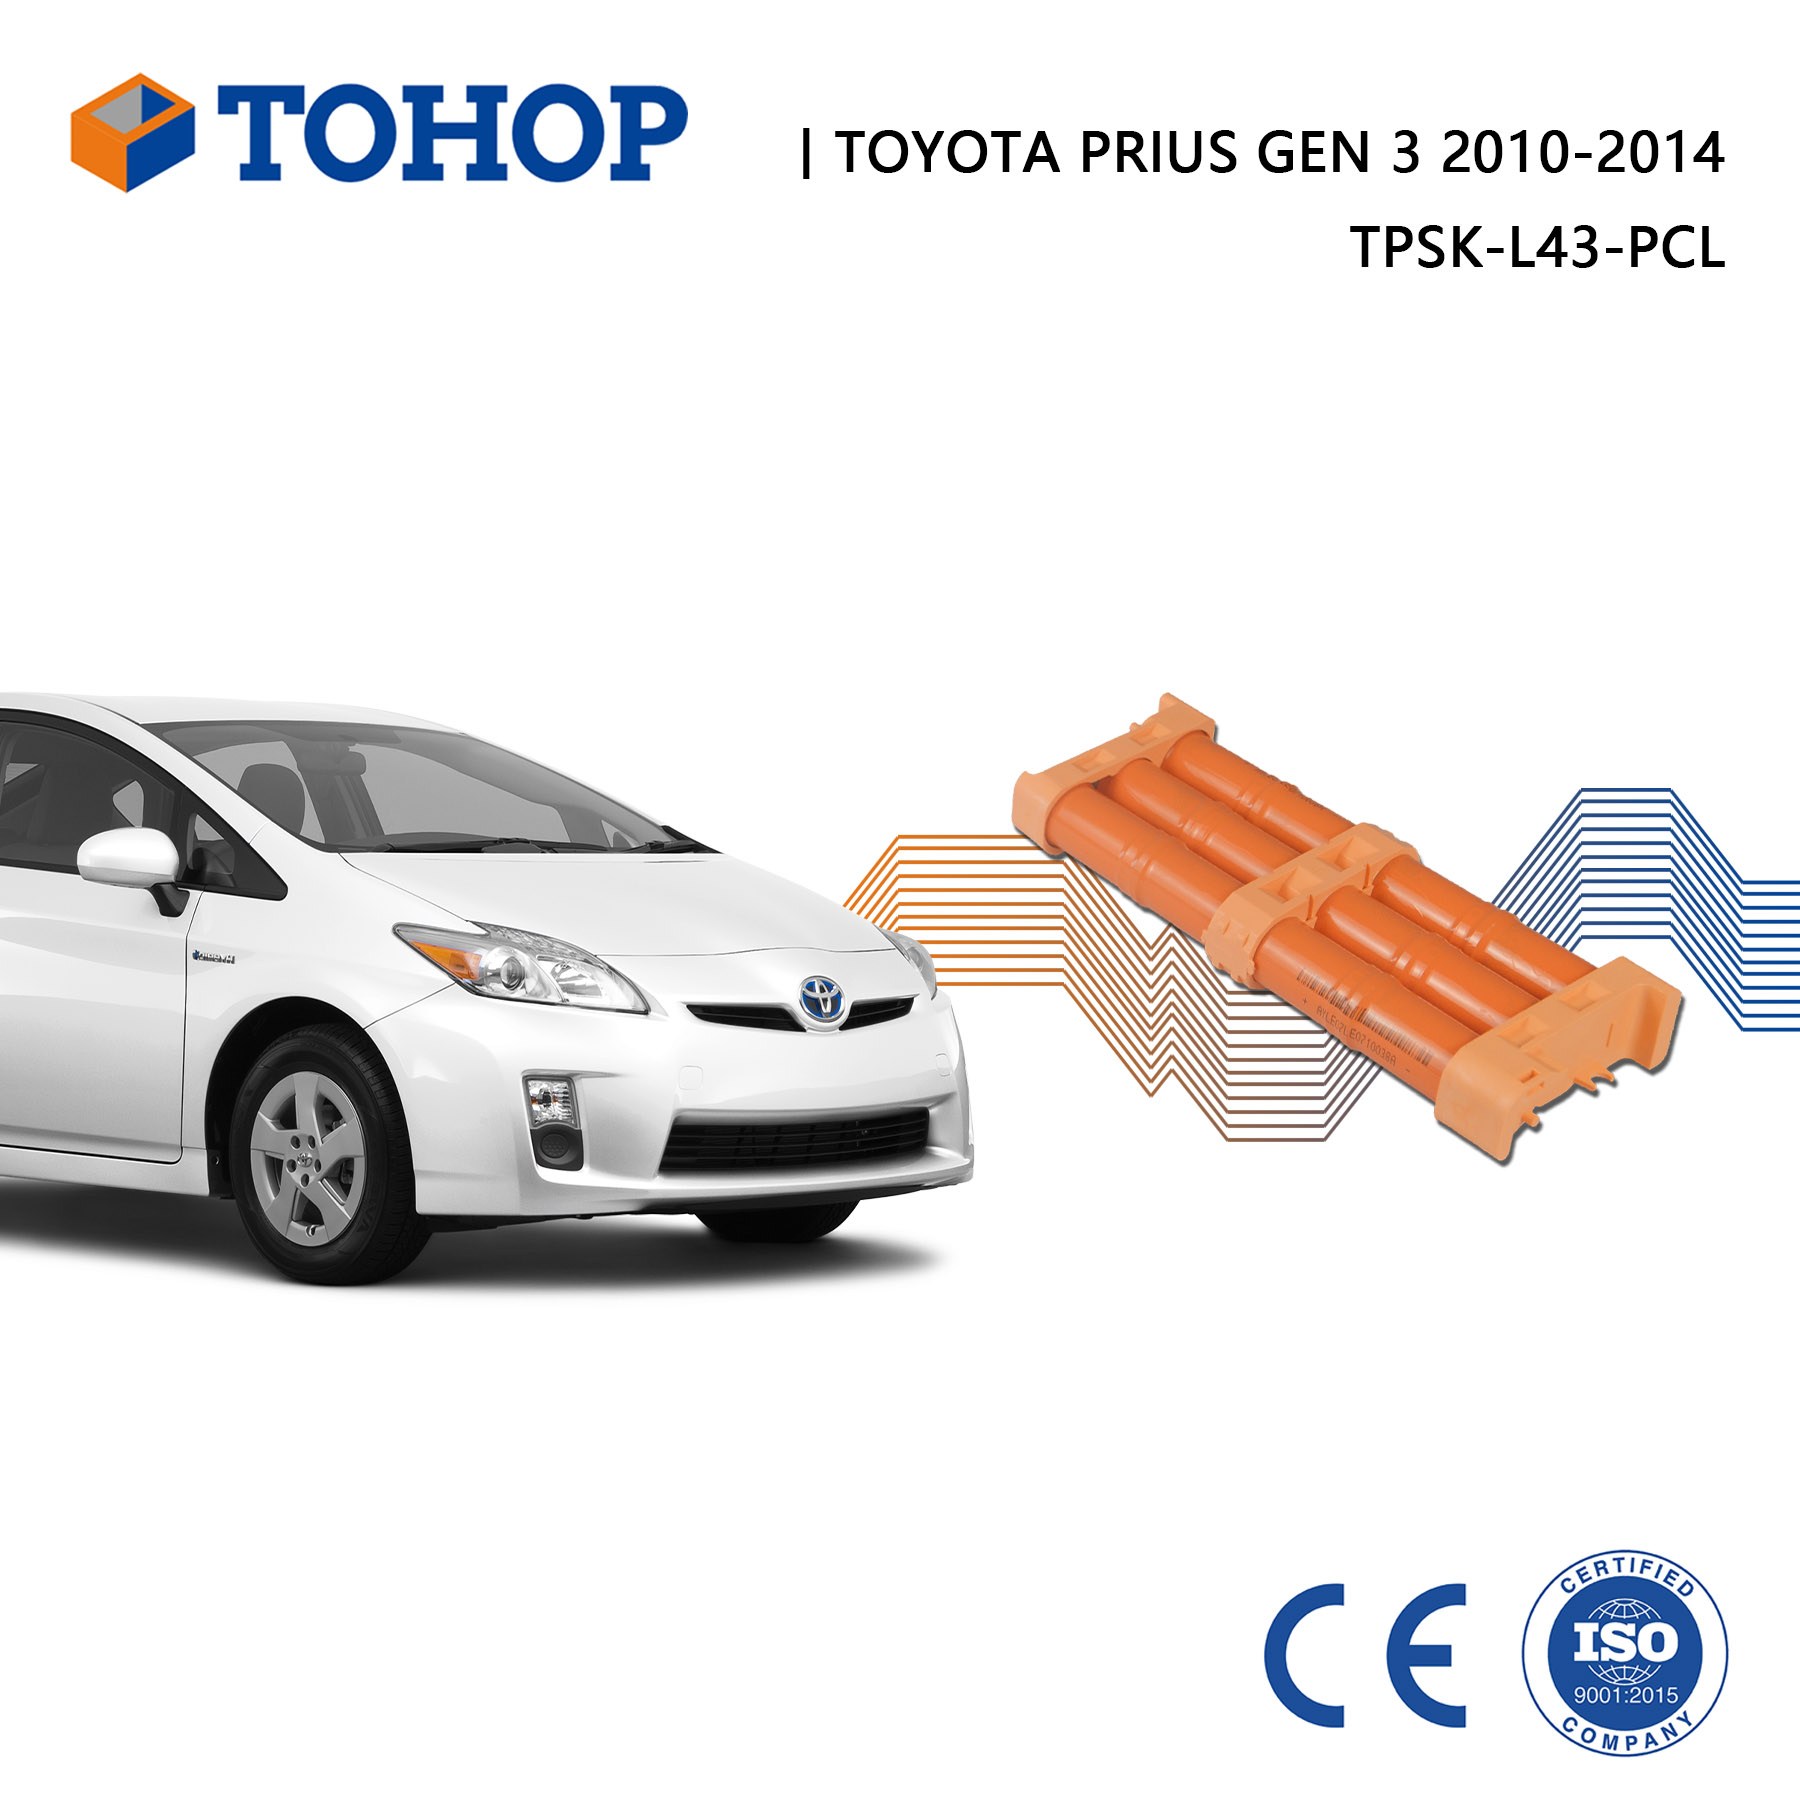 TOHOP Sostituzione della batteria ibrida Toyota Prius Gen 3 nuovissima per HEV